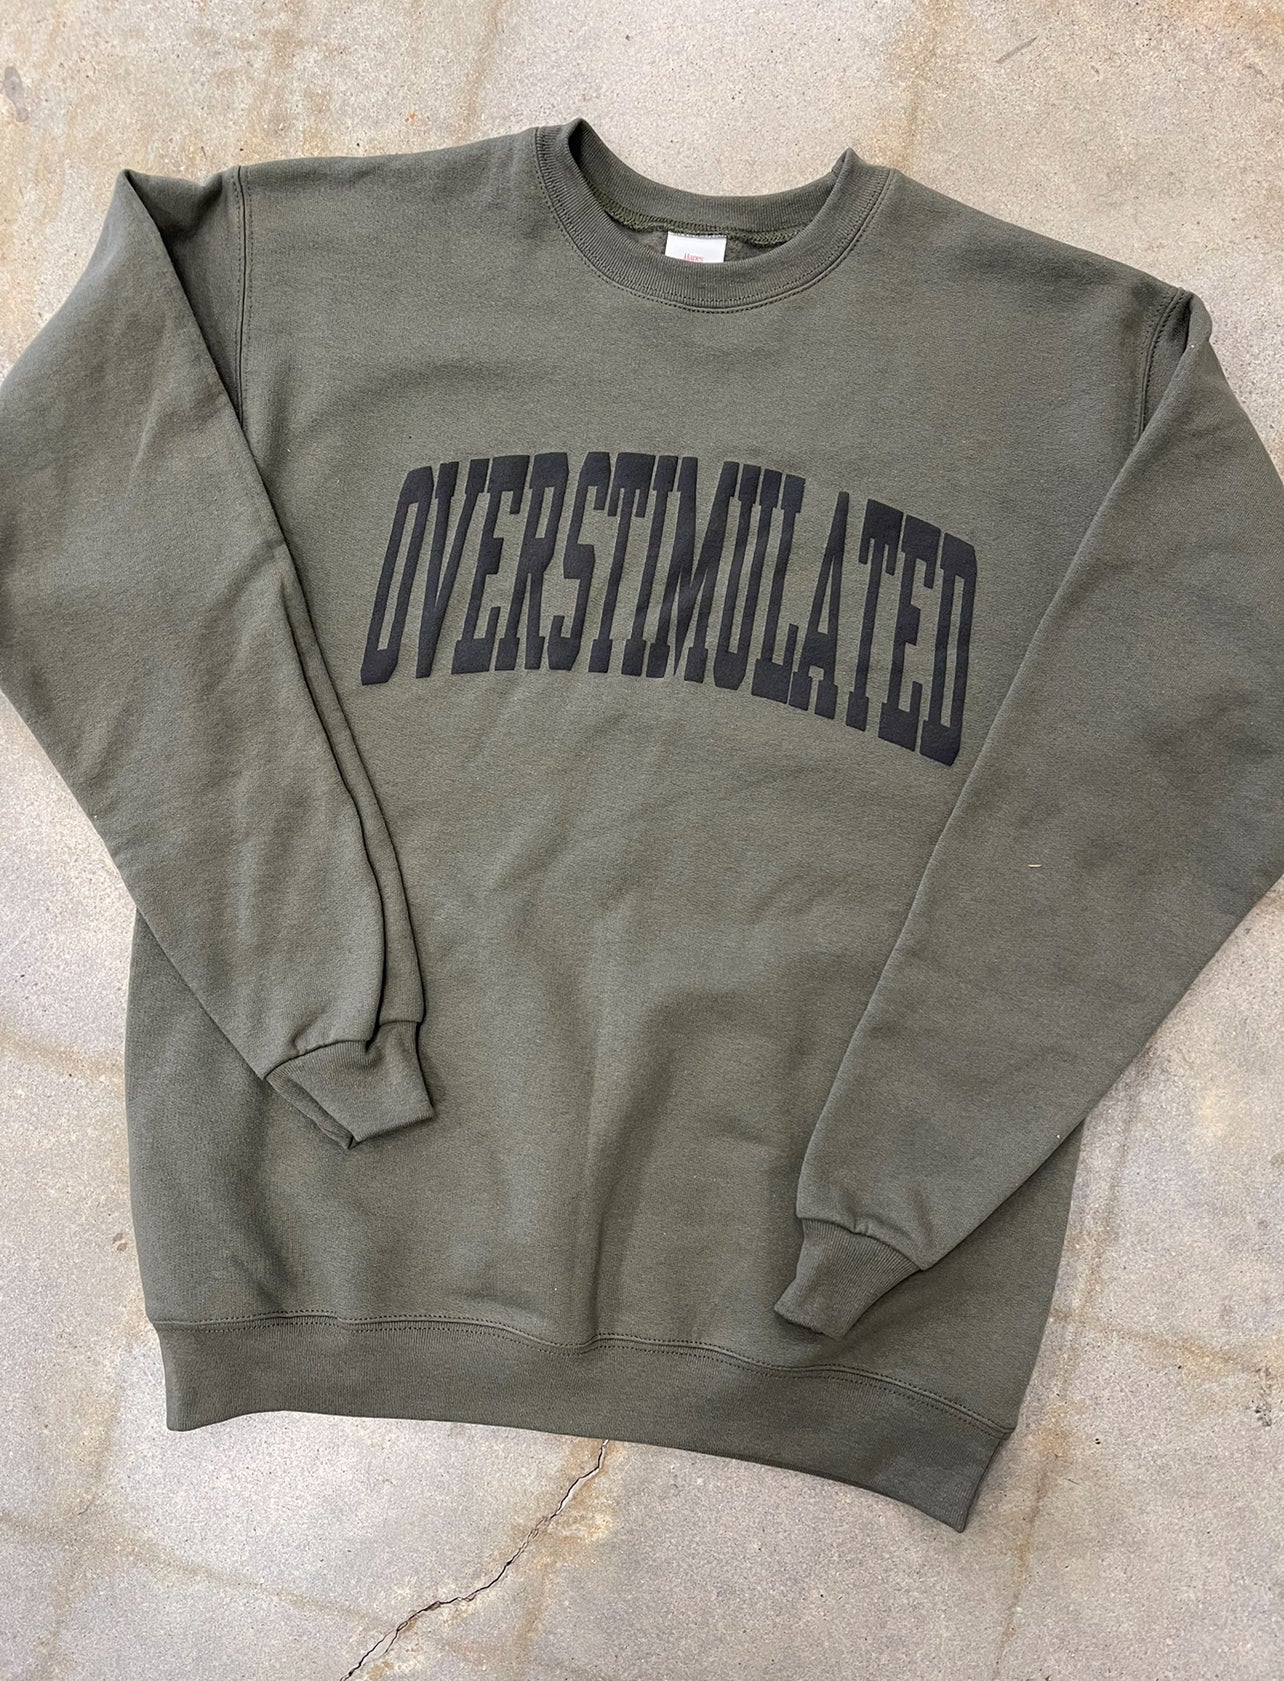 Overstimulated Crewneck Sweatshirt